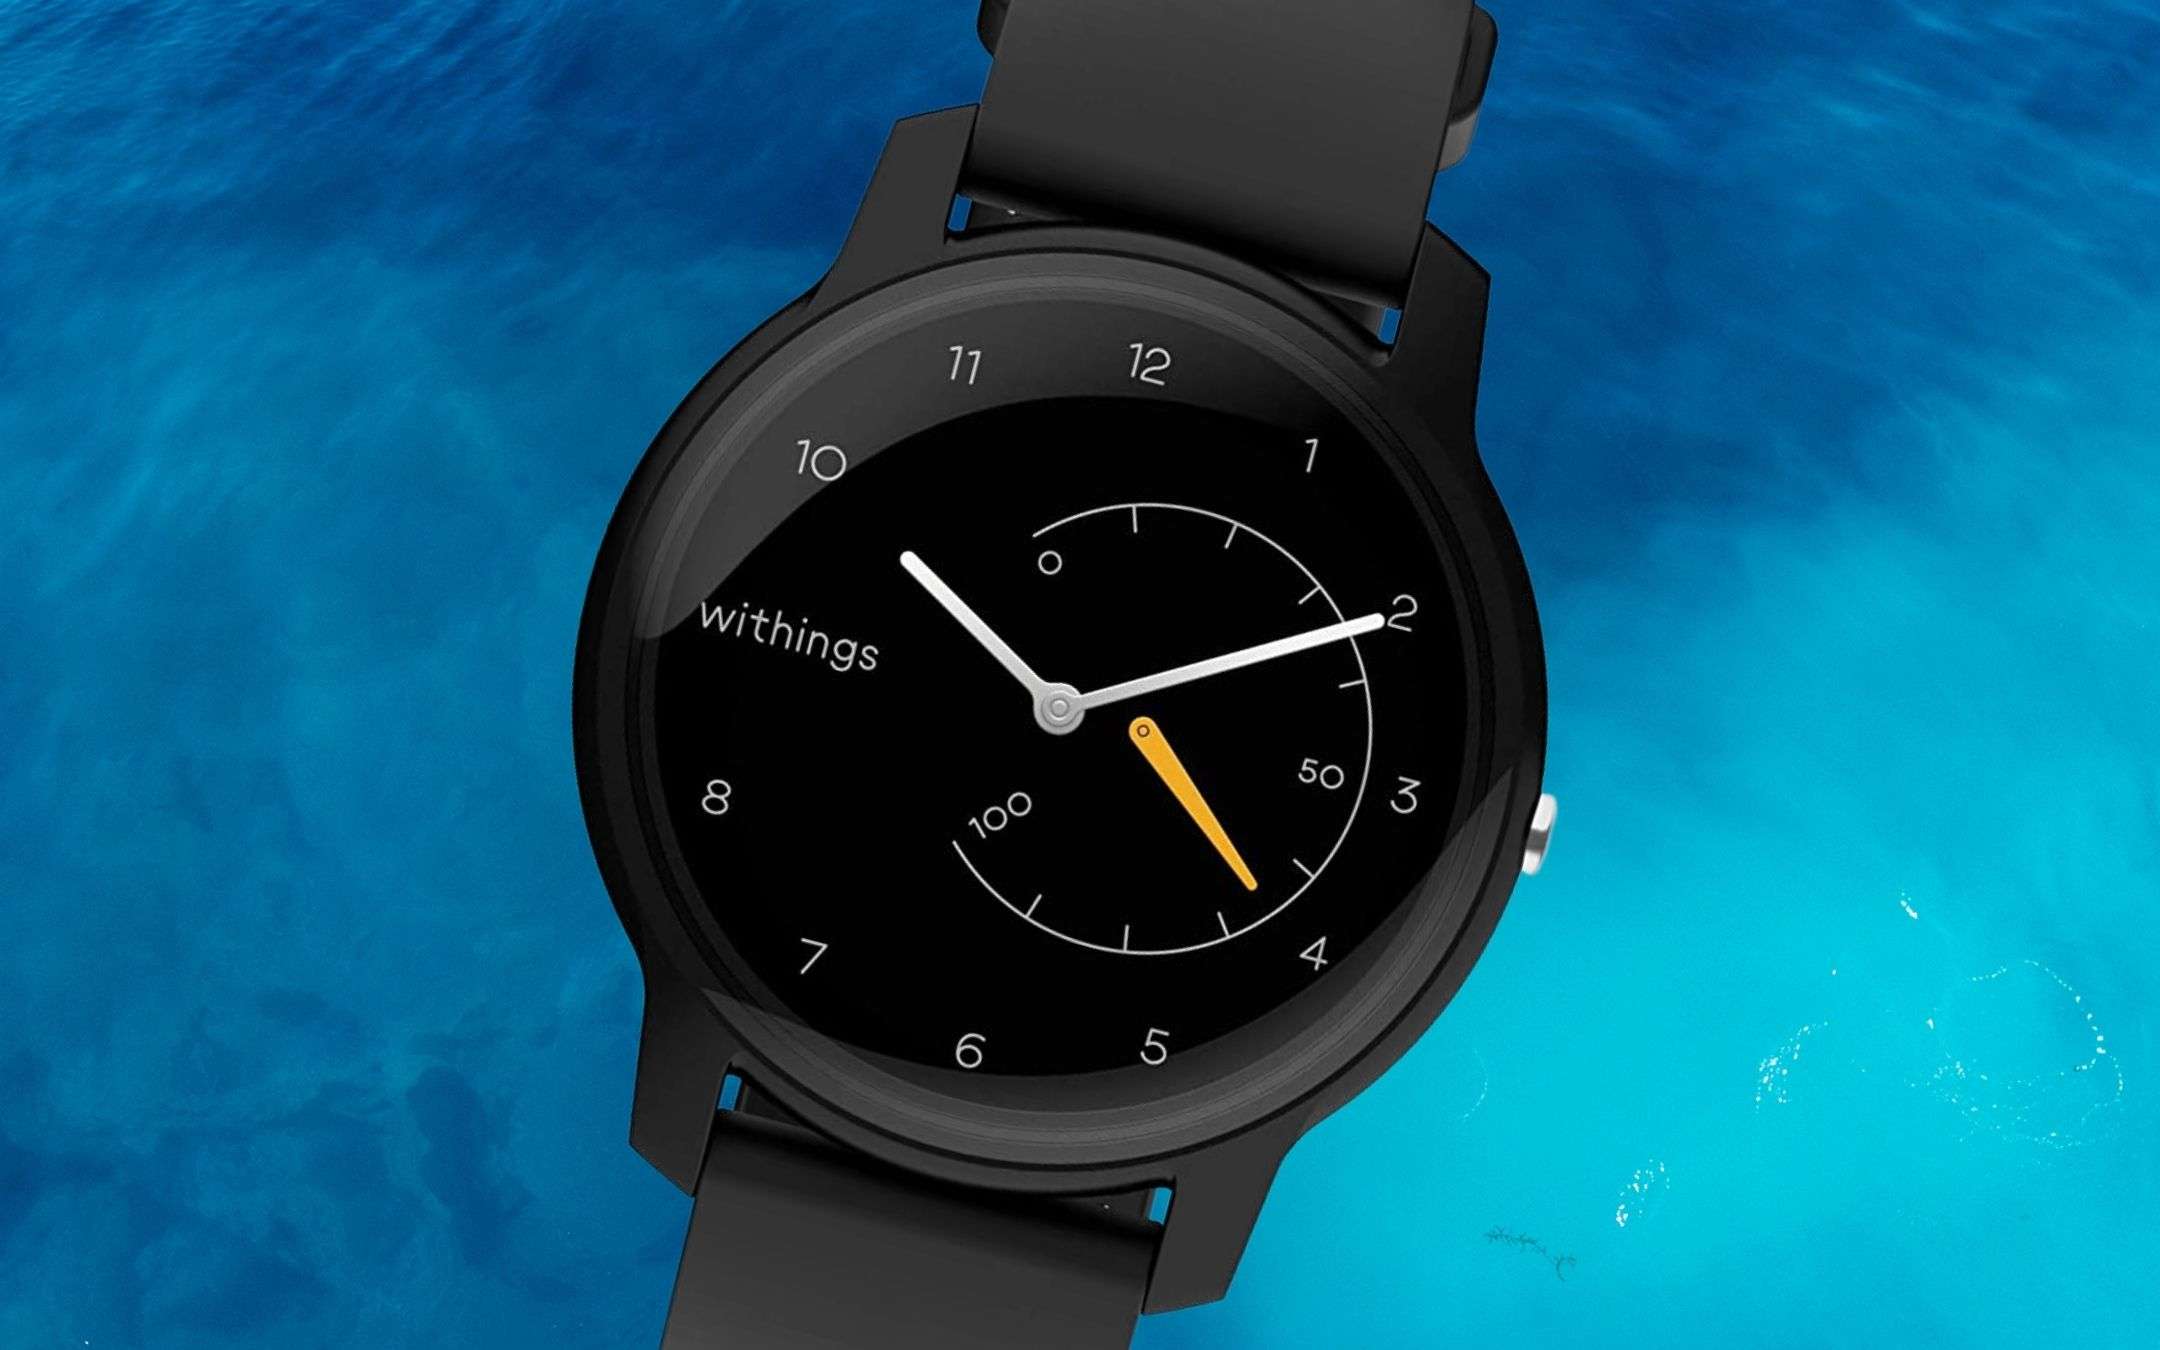 Eccezionale smartwatch ibrido a prezzo BOMBA (54€)